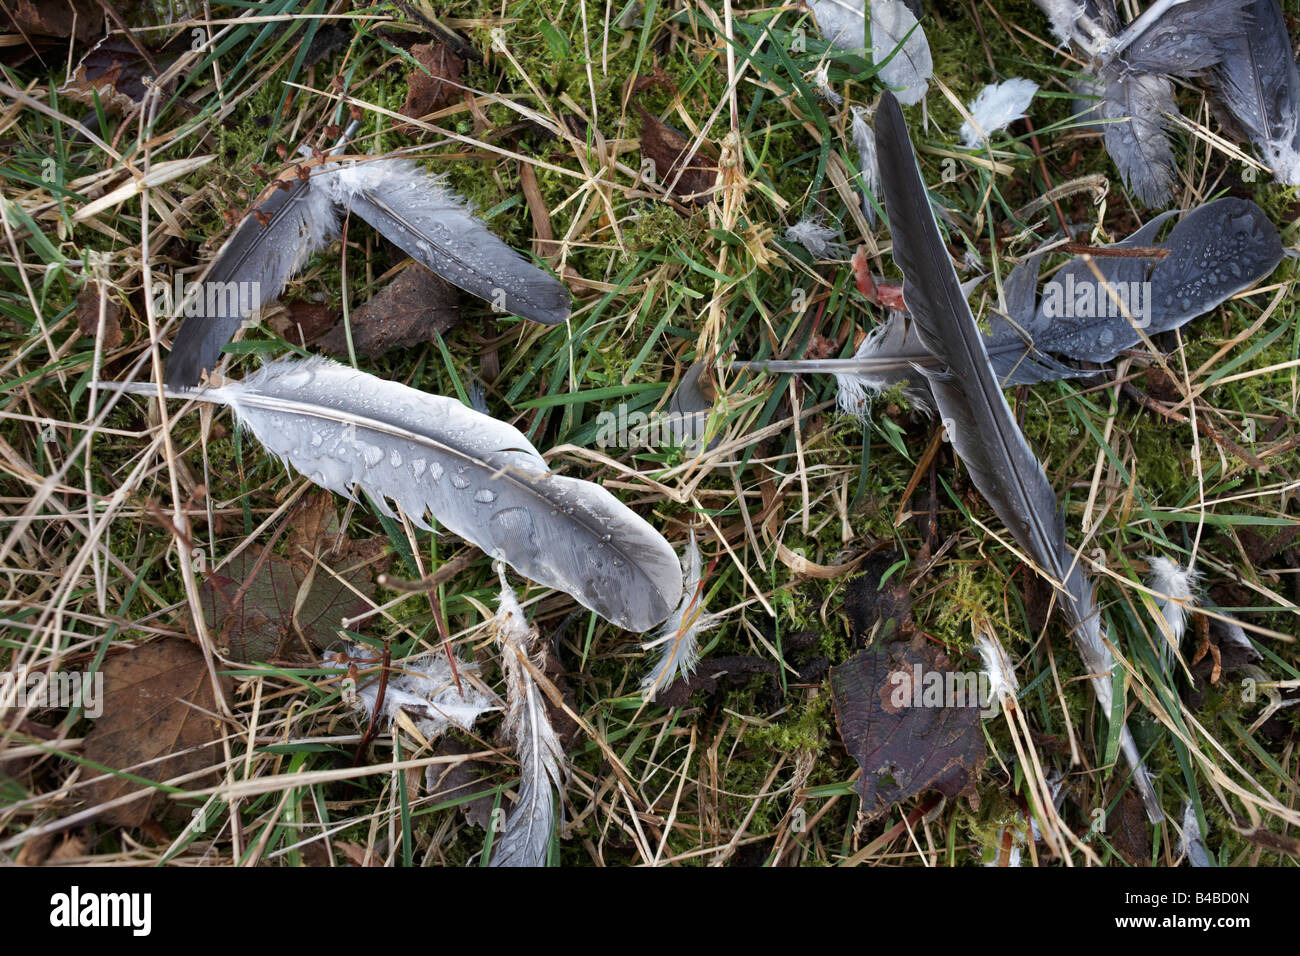 Le plumage des oiseaux de la faune morte tué après une collision avec des lignes électriques sur un sol forestier, Clowes Wood, Chestfield, Kent Banque D'Images